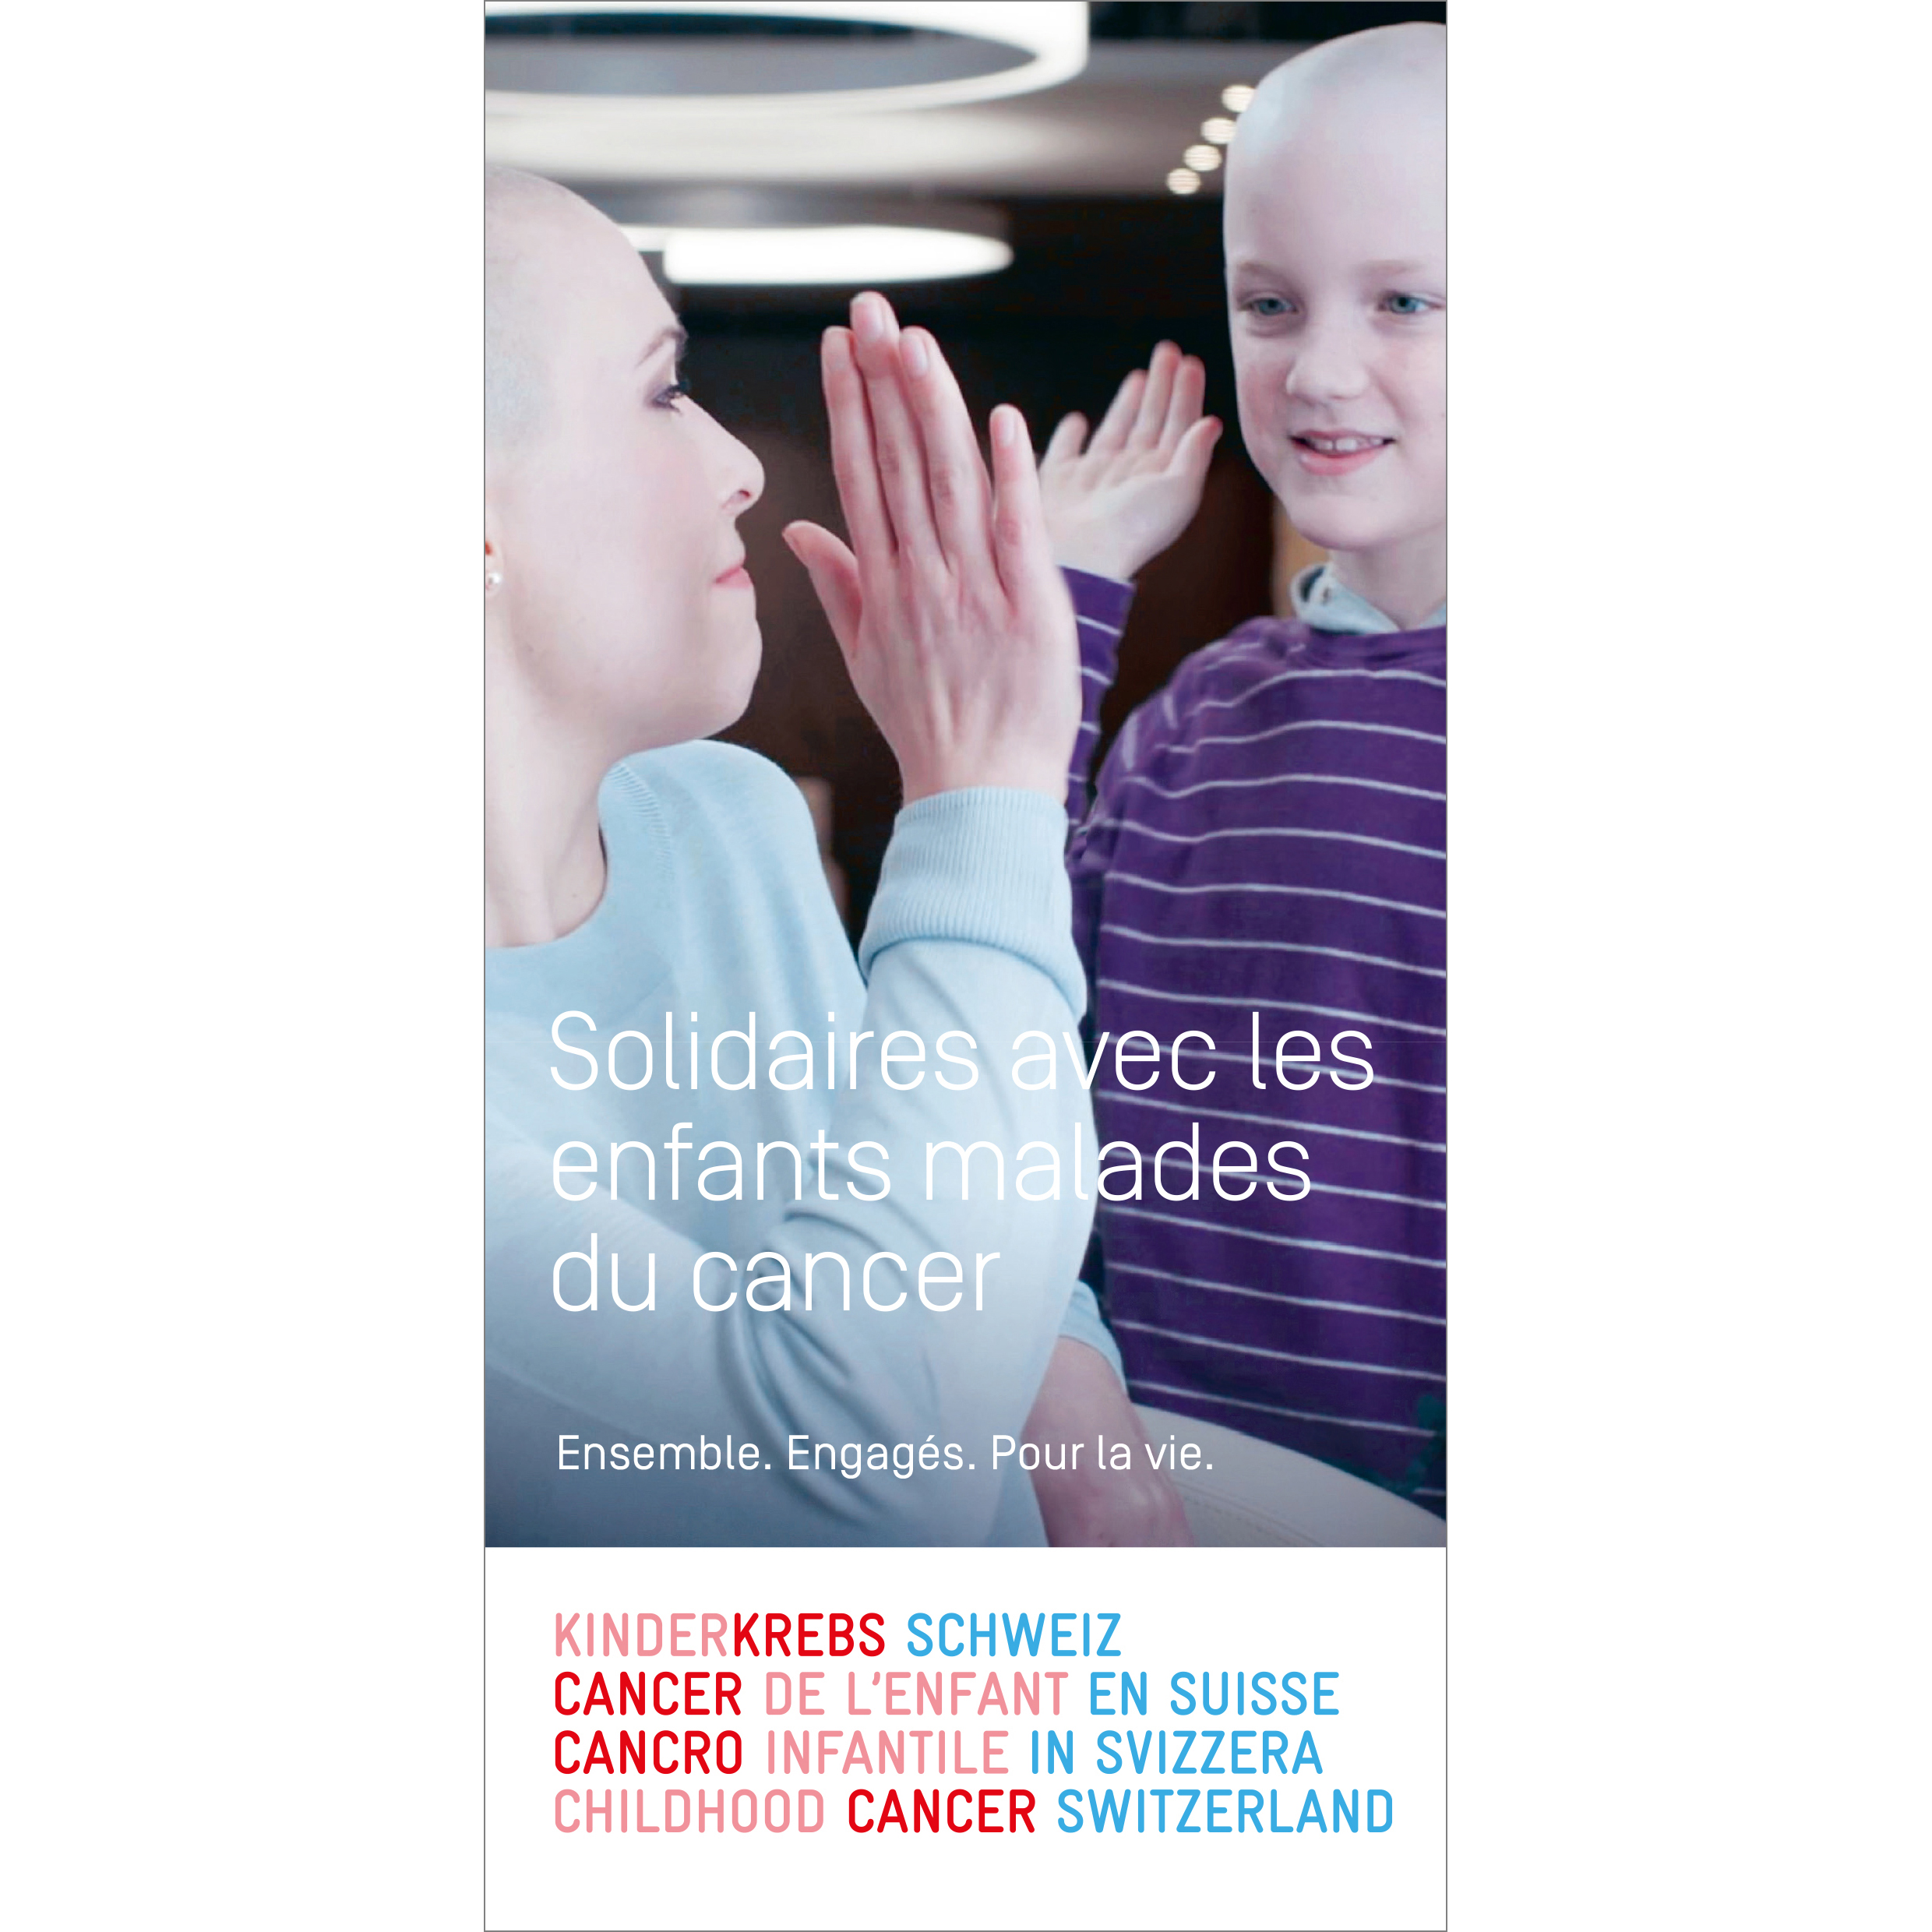 Broschüre Solidarisch mit krebskranken Kindern